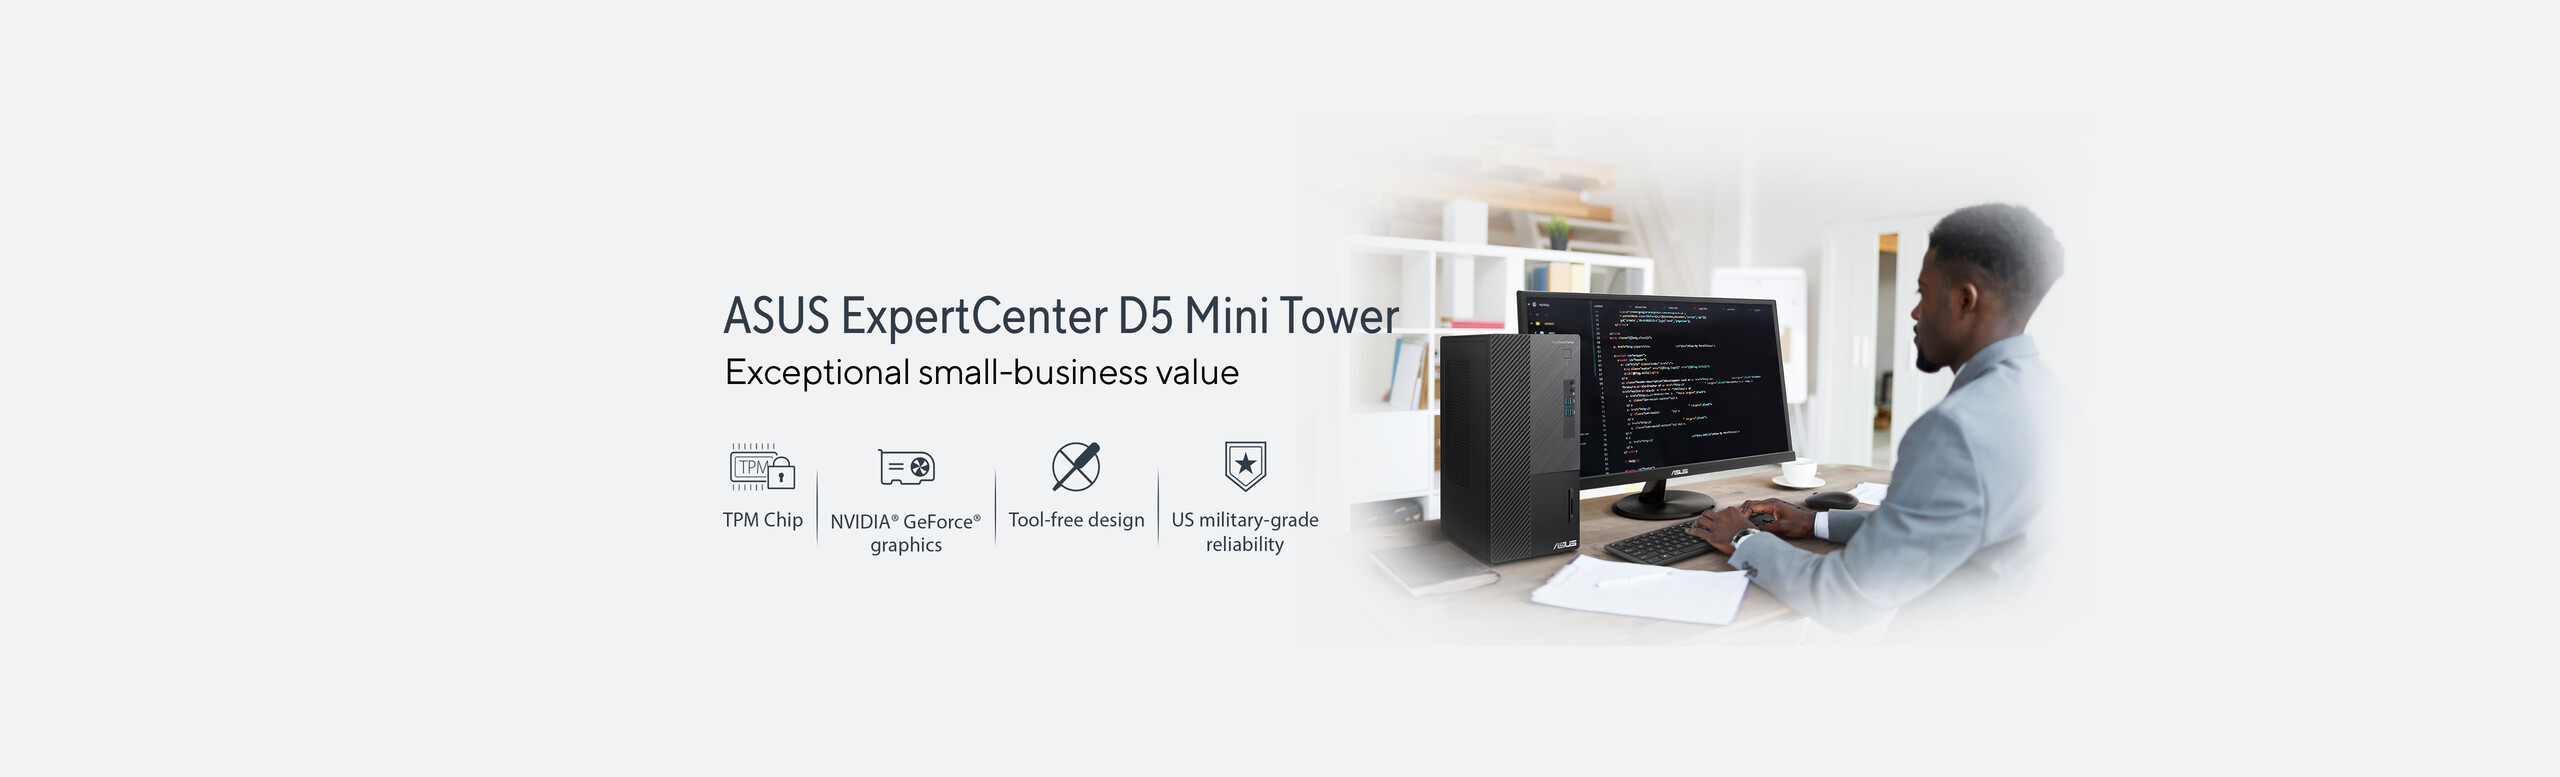 ExpertCenter D5 Mini Tower (D500MD)